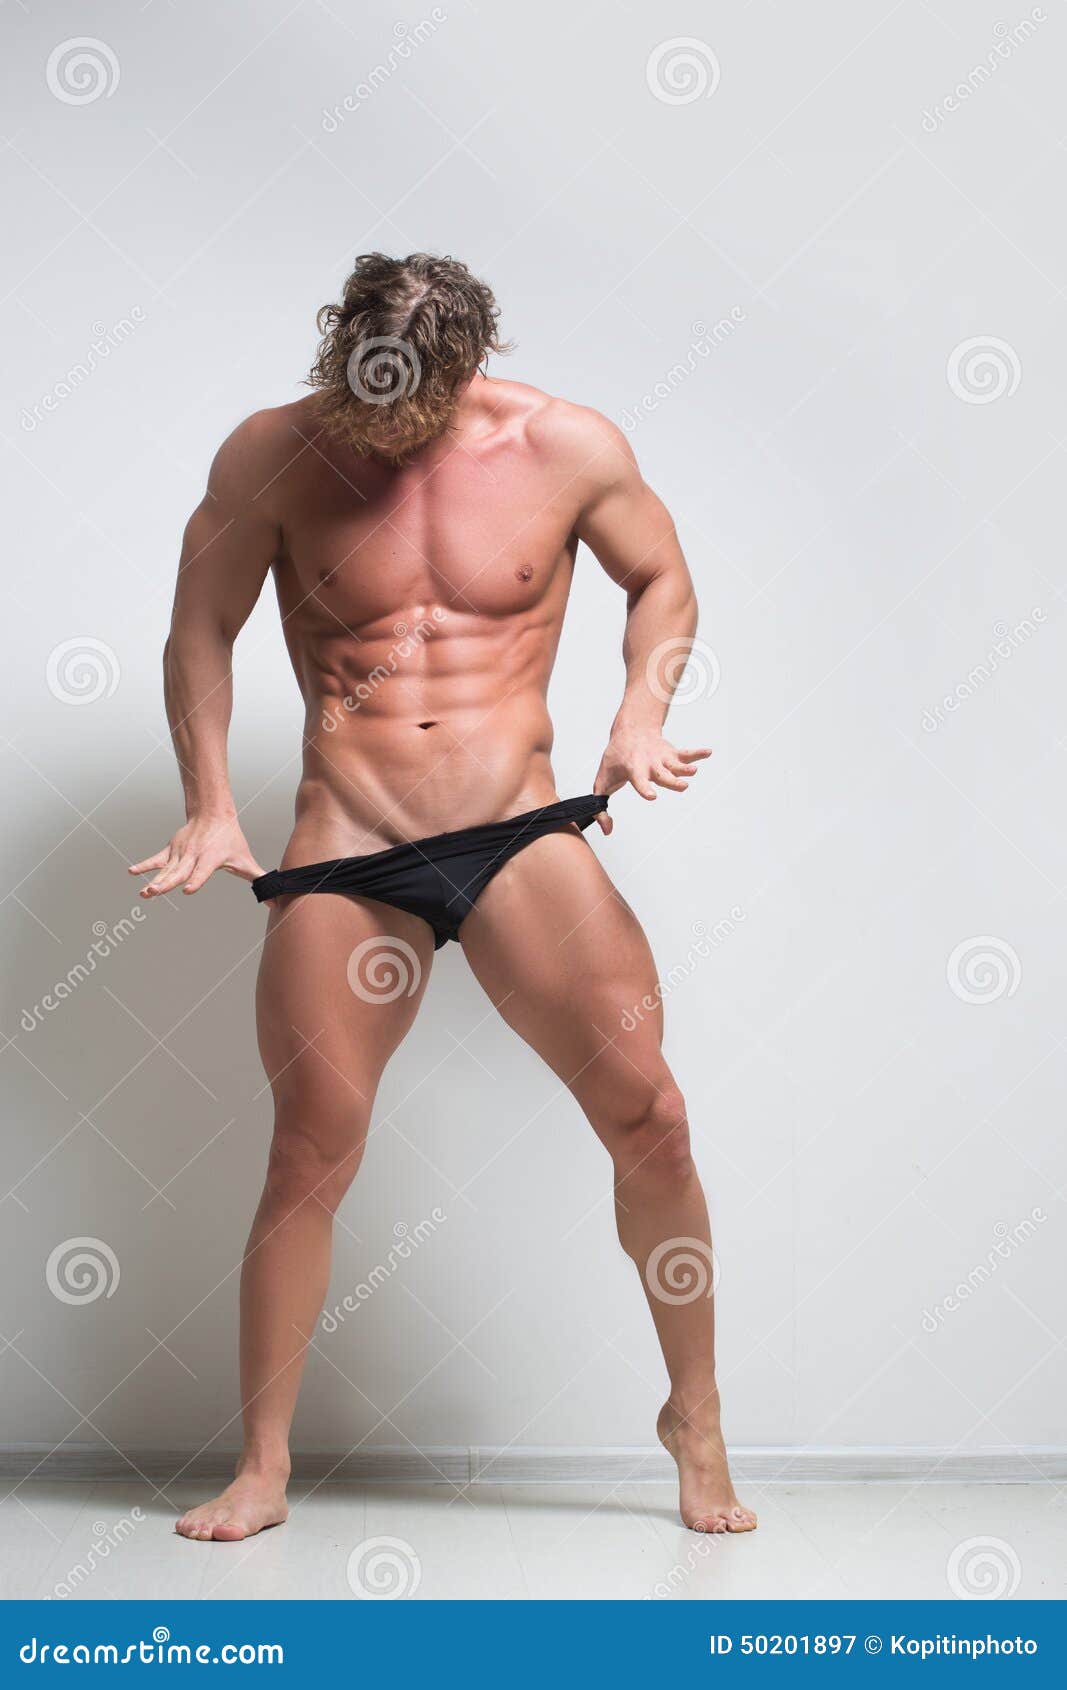 muscular male model in underwear